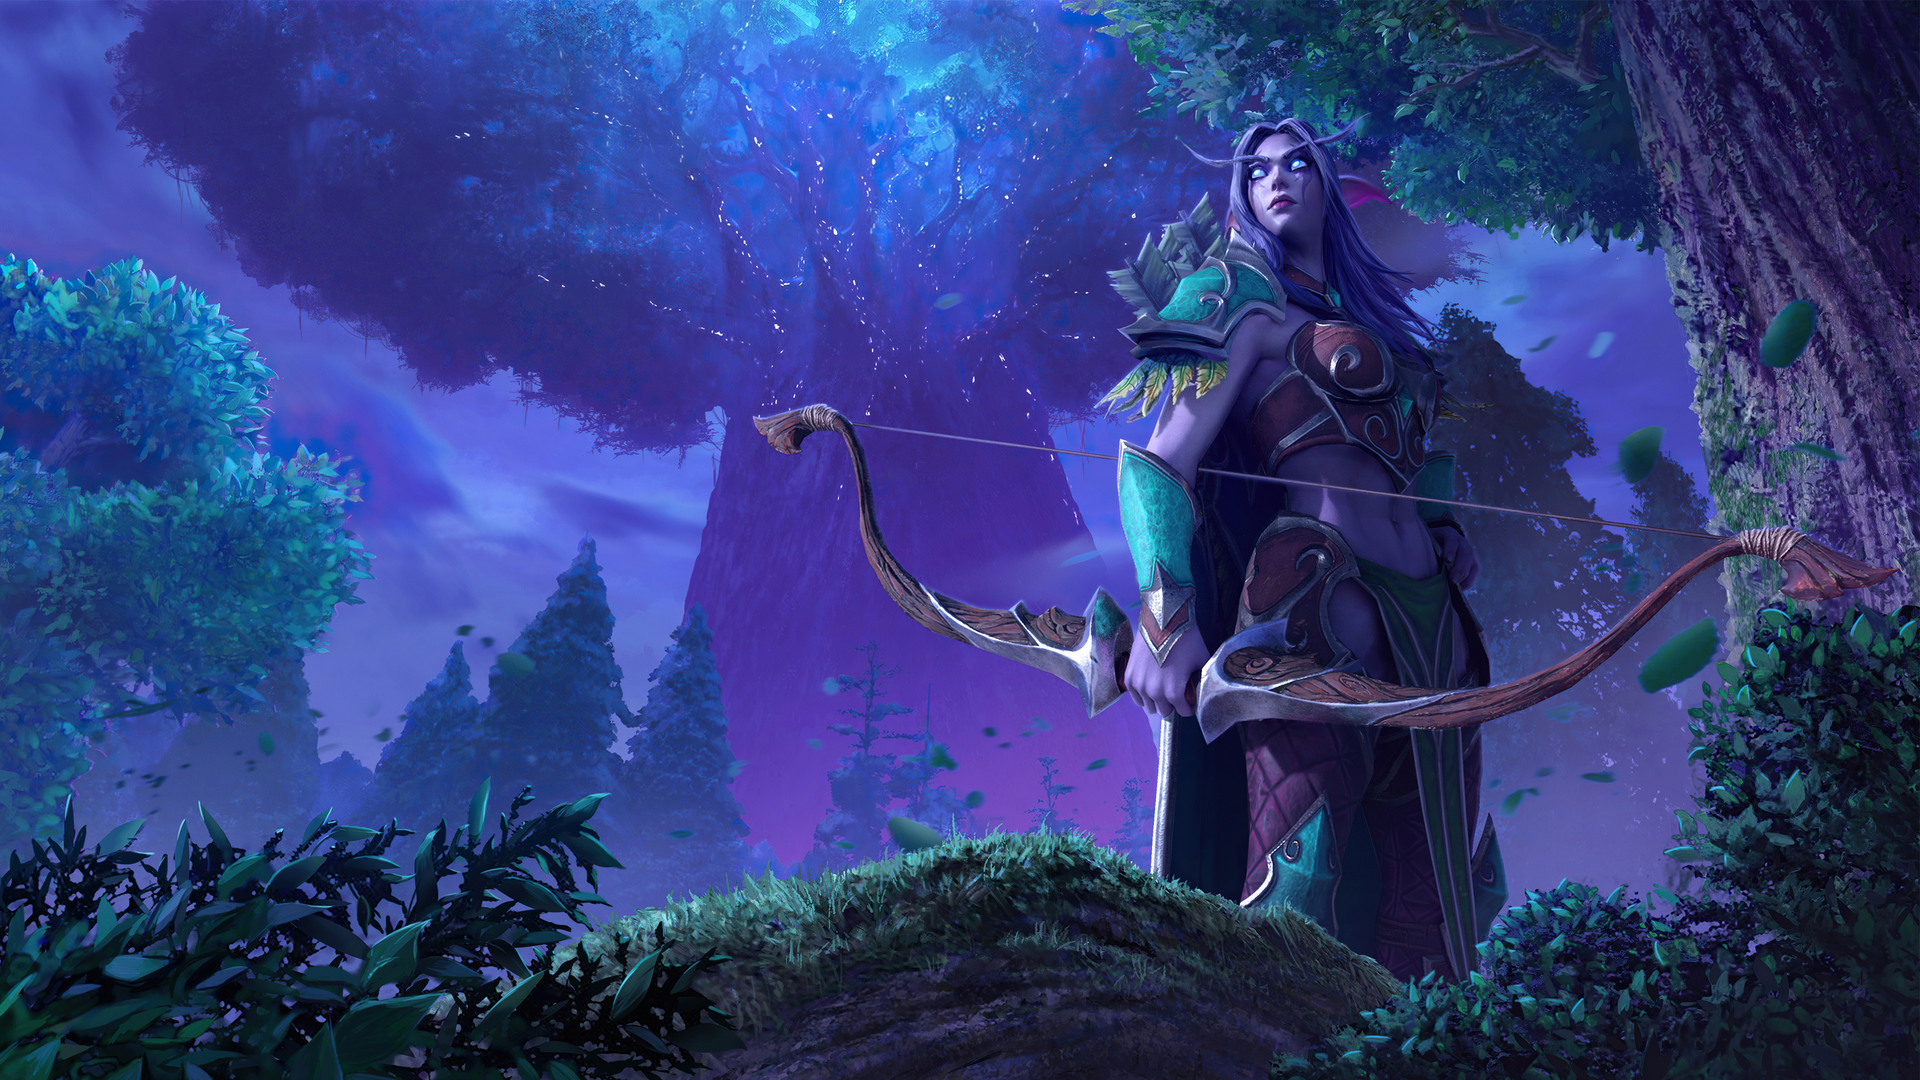 Night Elf Fantasy World Of Warcraft 4k Wallpaper